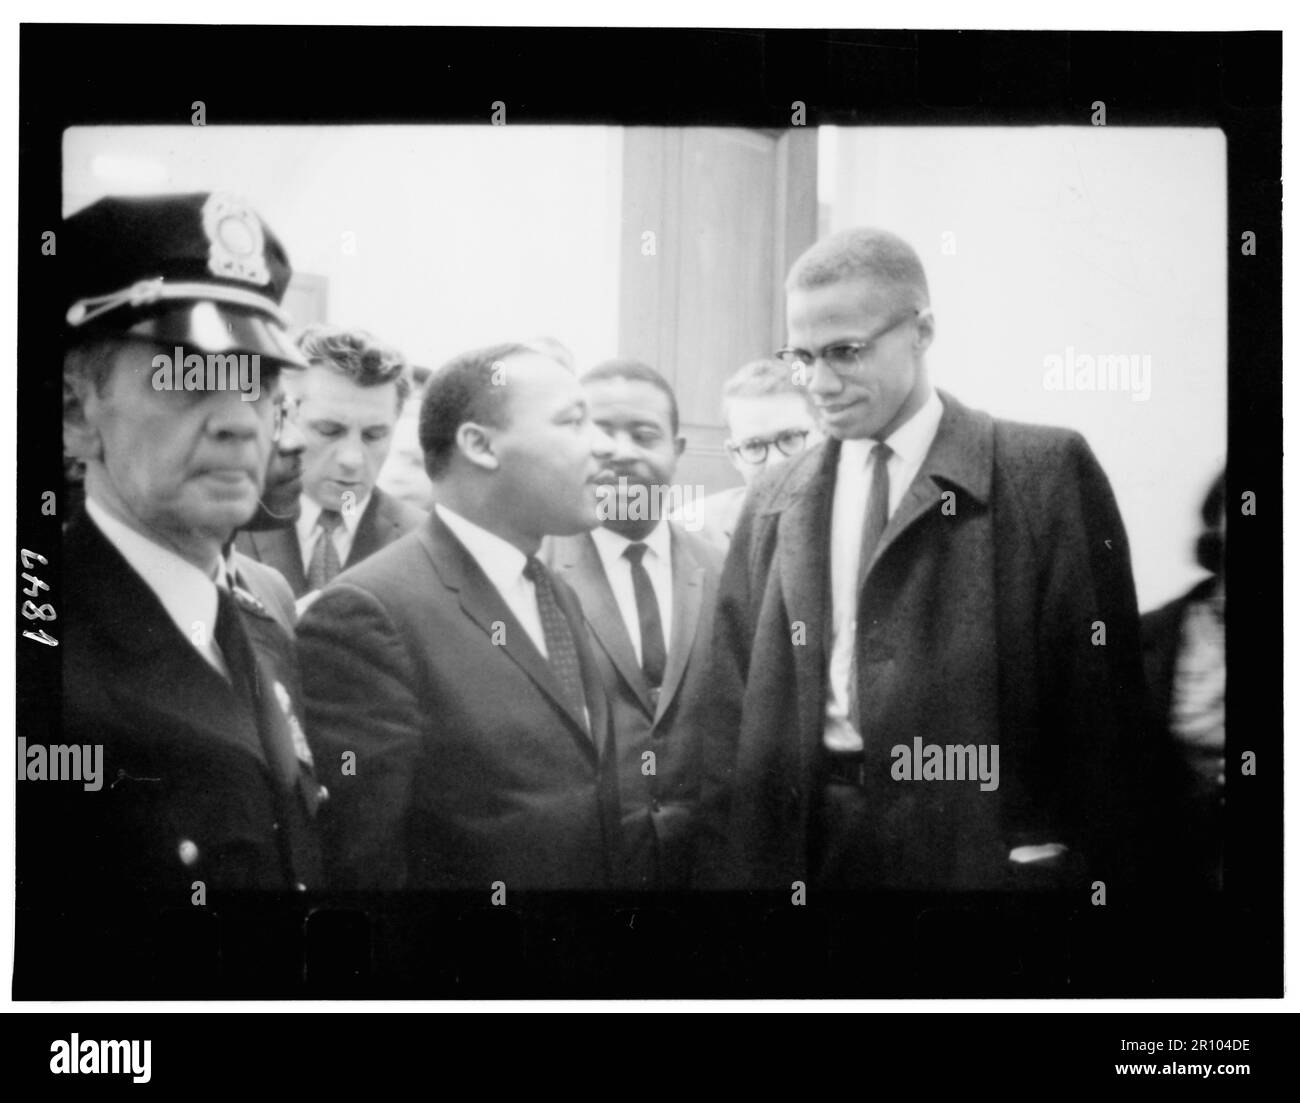 Martin Luther King et Malcolm X suivent les États-Unis de King Conférence de presse du Capitole sur le débat du Sénat sur la Loi de 1964 sur les droits civils. Marion S. Trikosko. 26 mars 1964. Banque D'Images